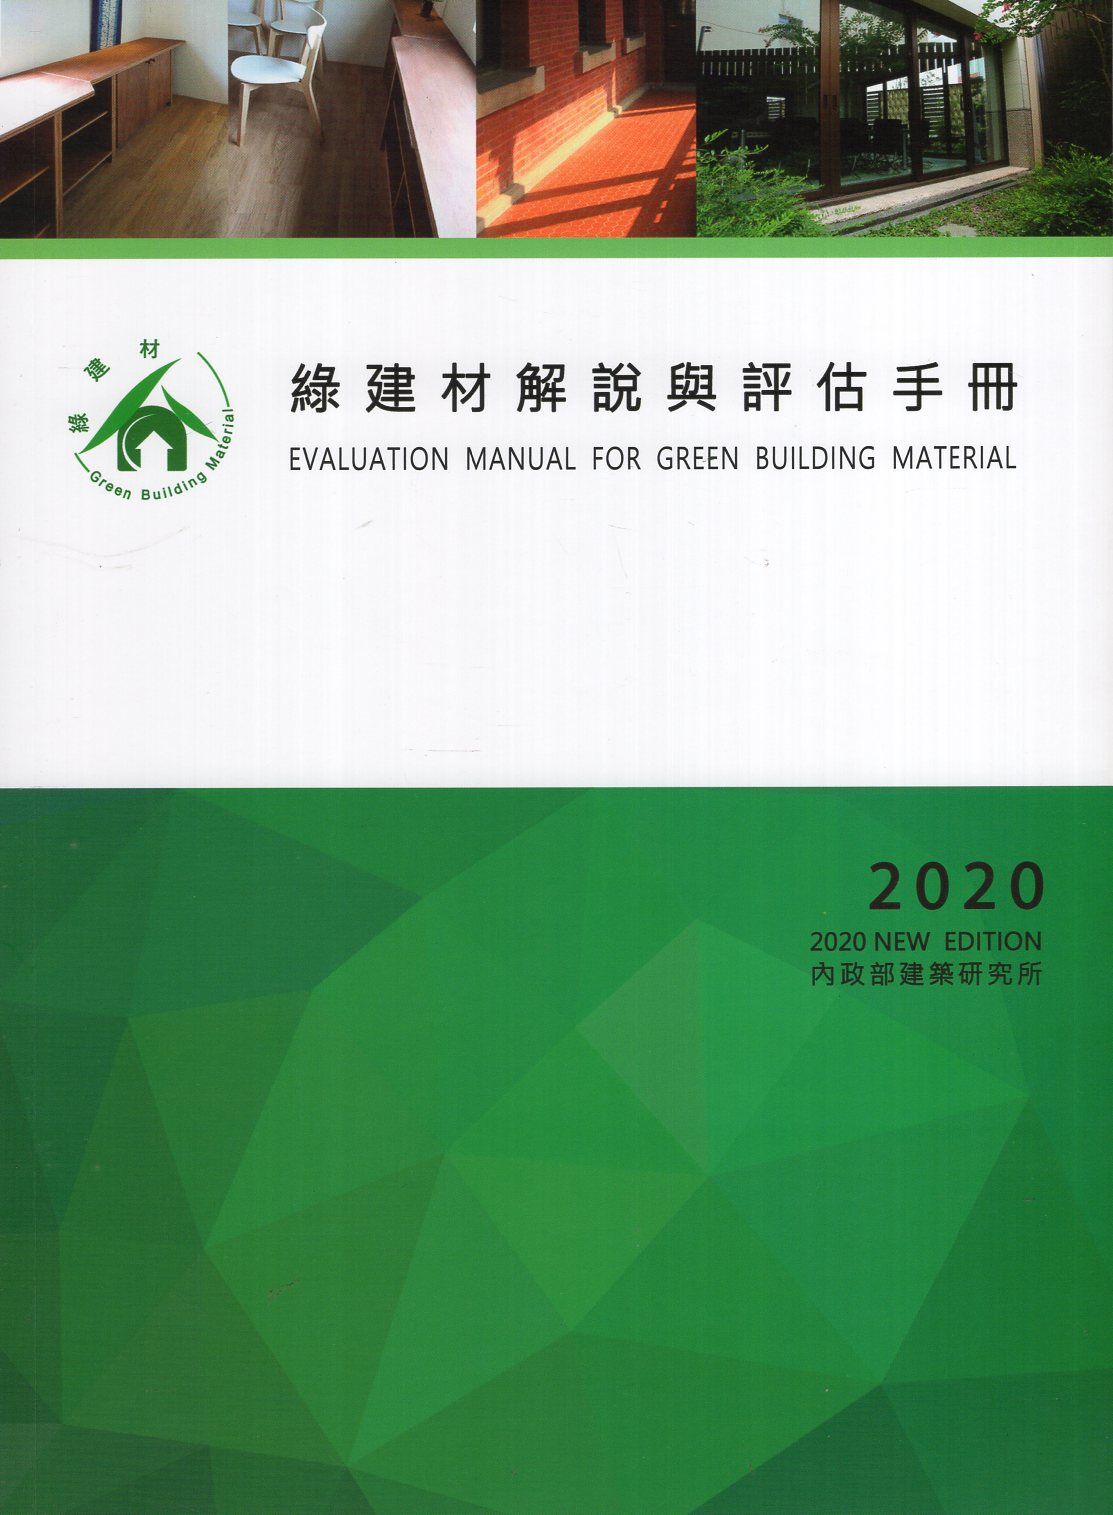 綠建材解說與評估手冊 2020年更新版 